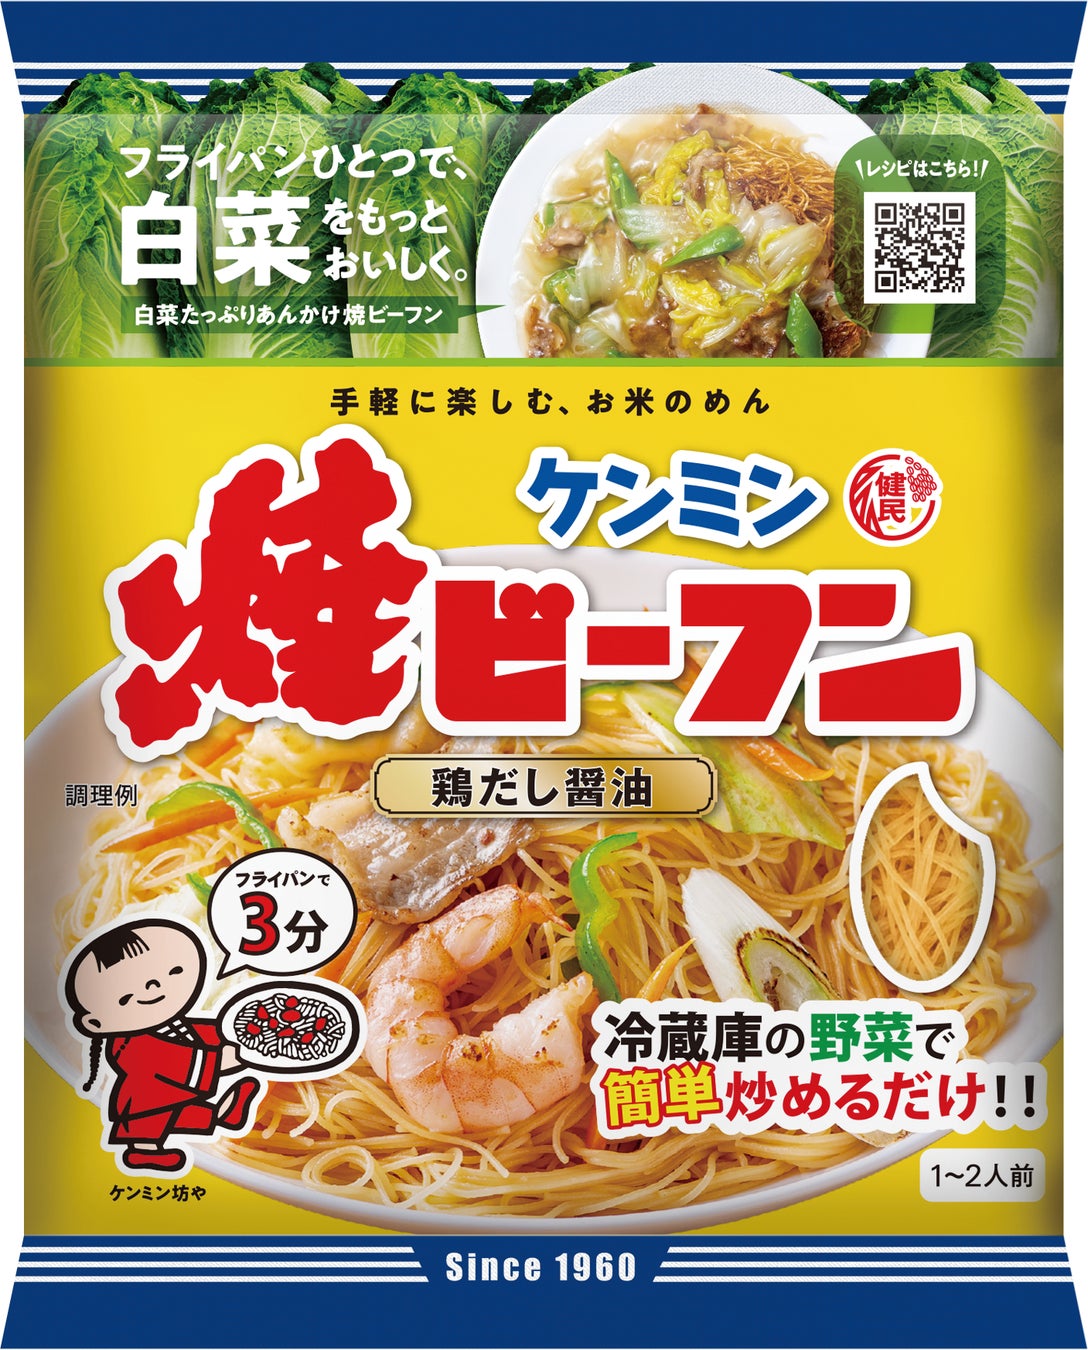 大原千鶴さんの冷凍レシピ本『NHKきょうの料理 大原千鶴のおいしい冷凍レシピ』発売たちまち増刷しました！